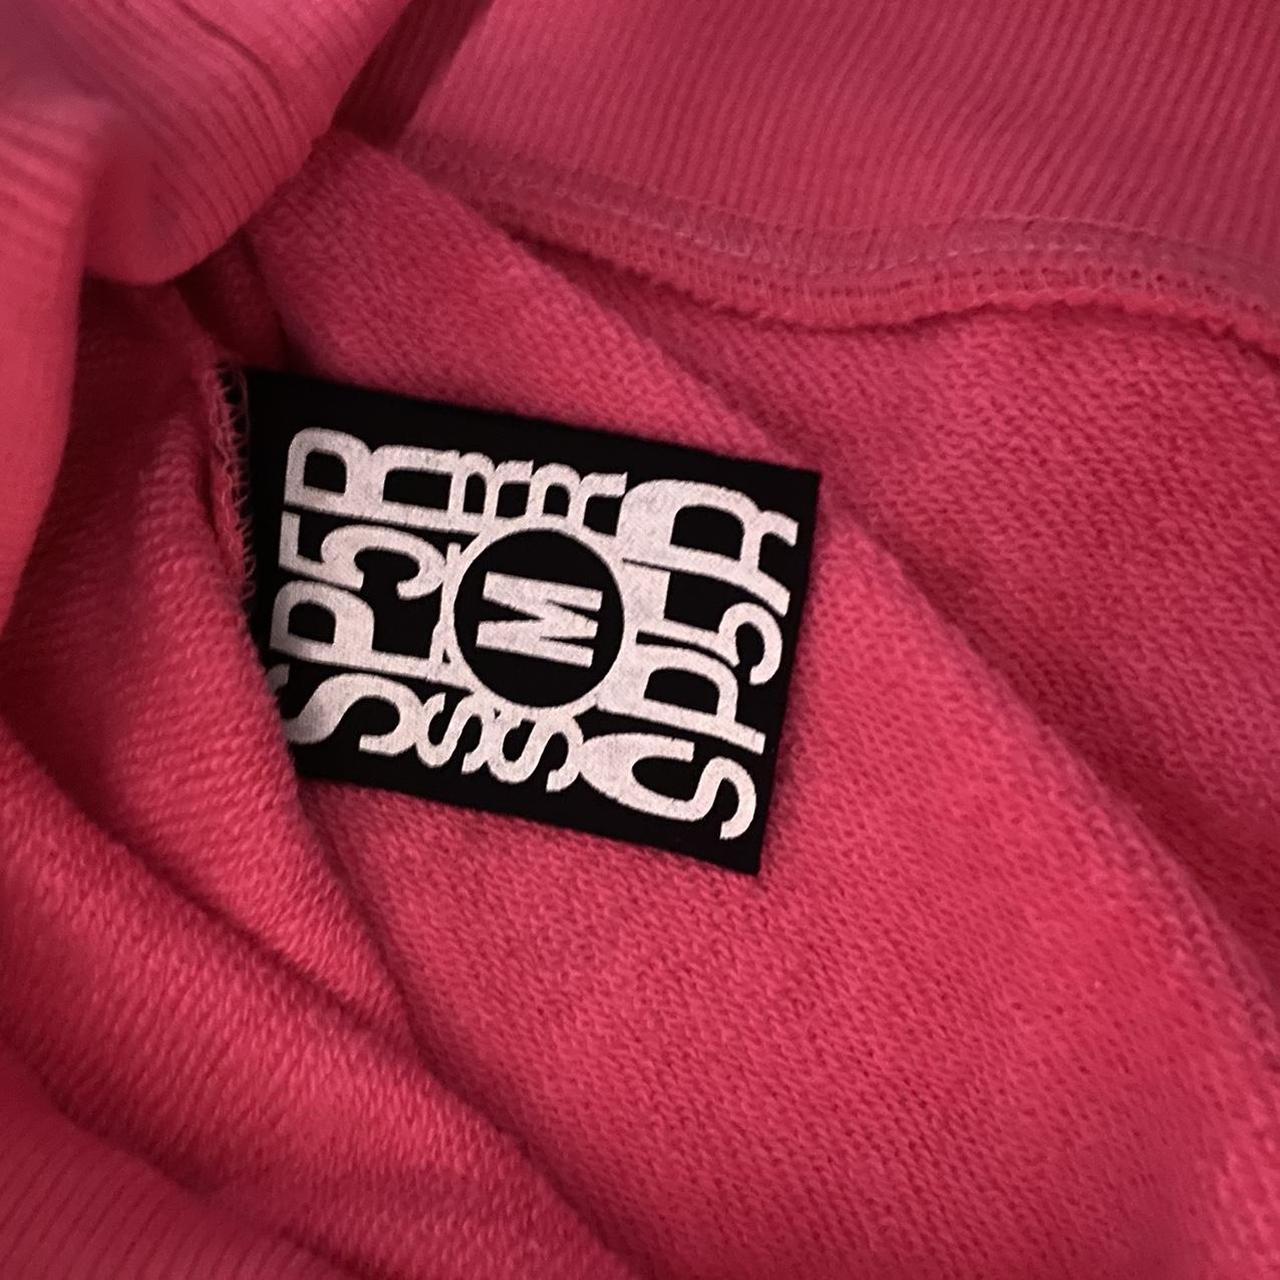 sp5der worldwide p1nk hoodie size medium brand... - Depop